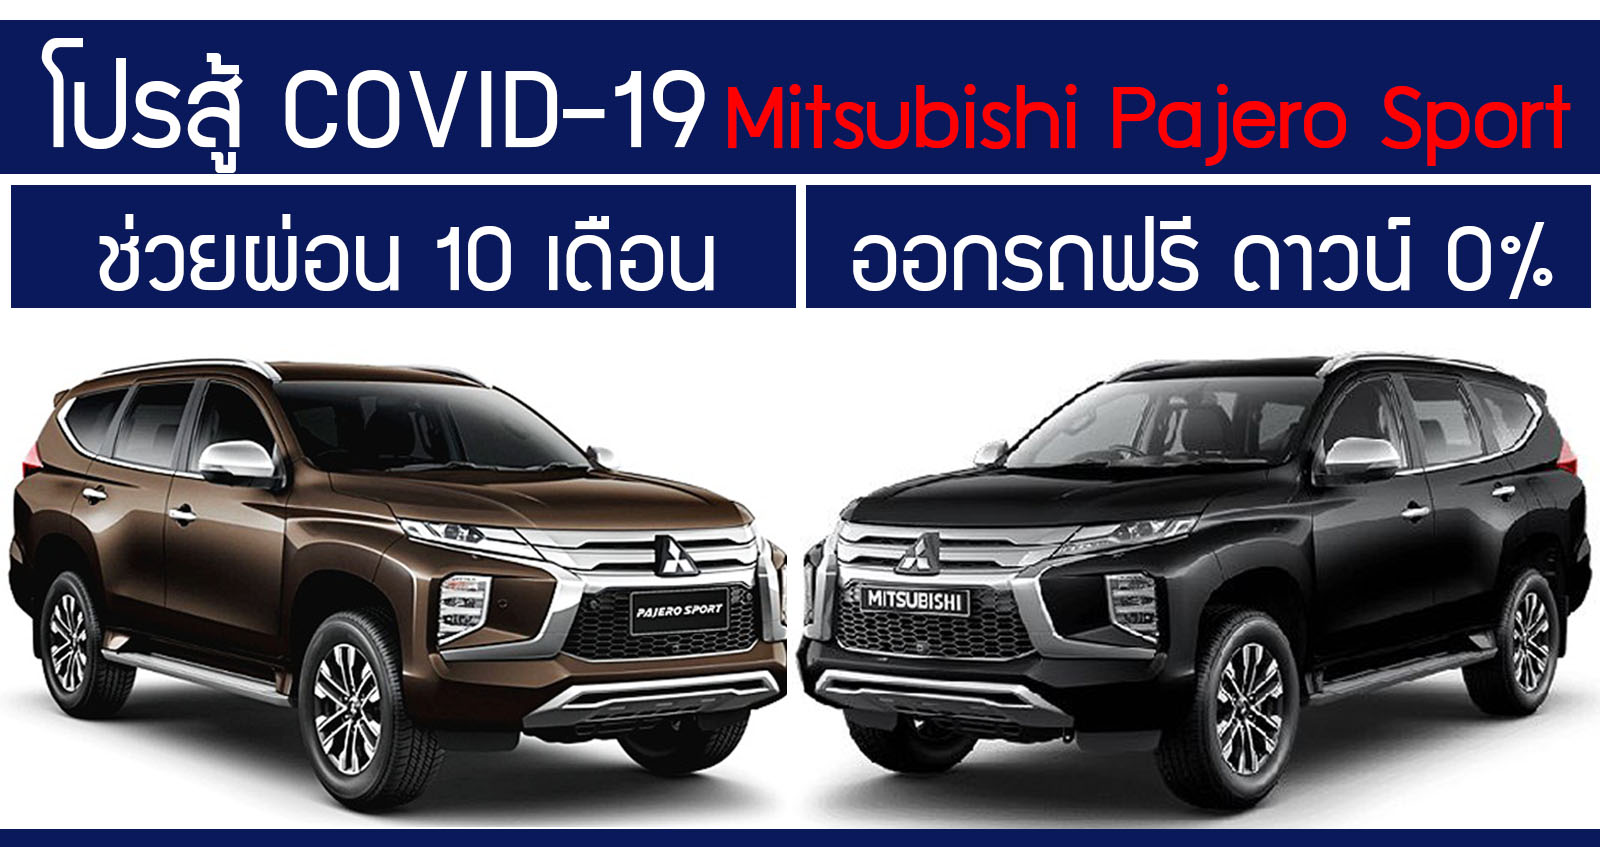 Mitsubishi Pajero Sport ออกรถฟรี ช่วยผ่อน 10 เดือน